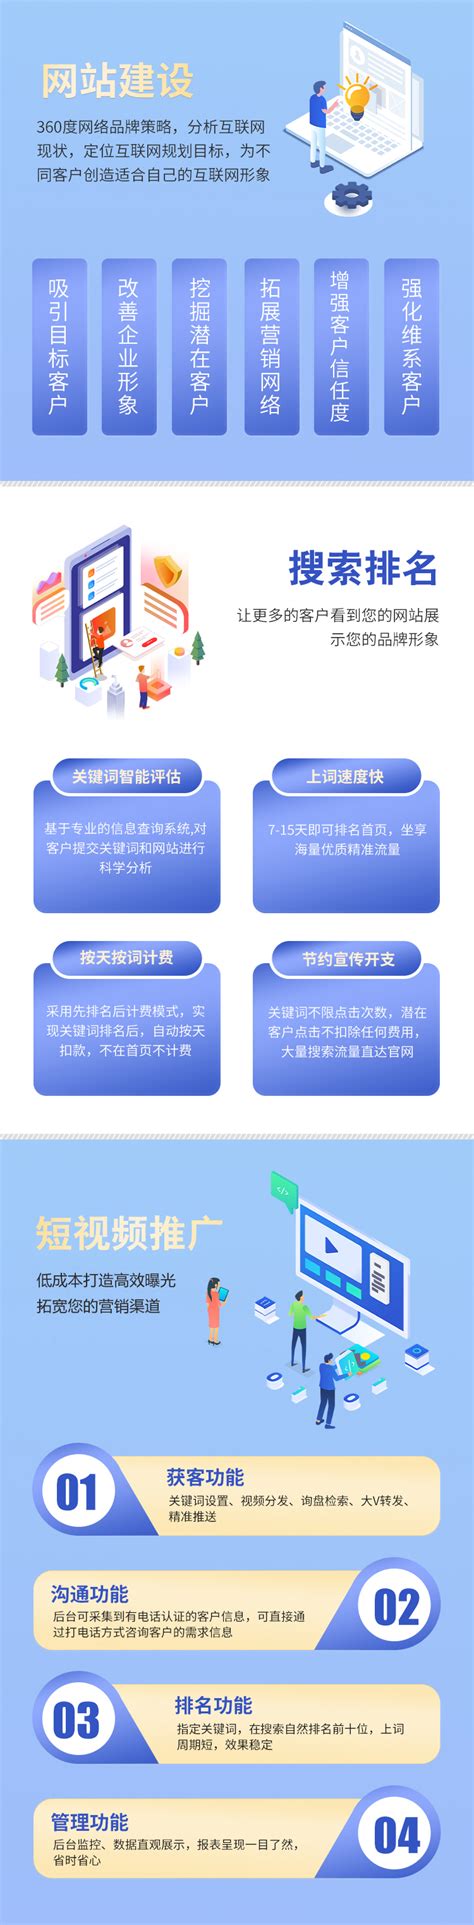 重庆网站建设的基本方案